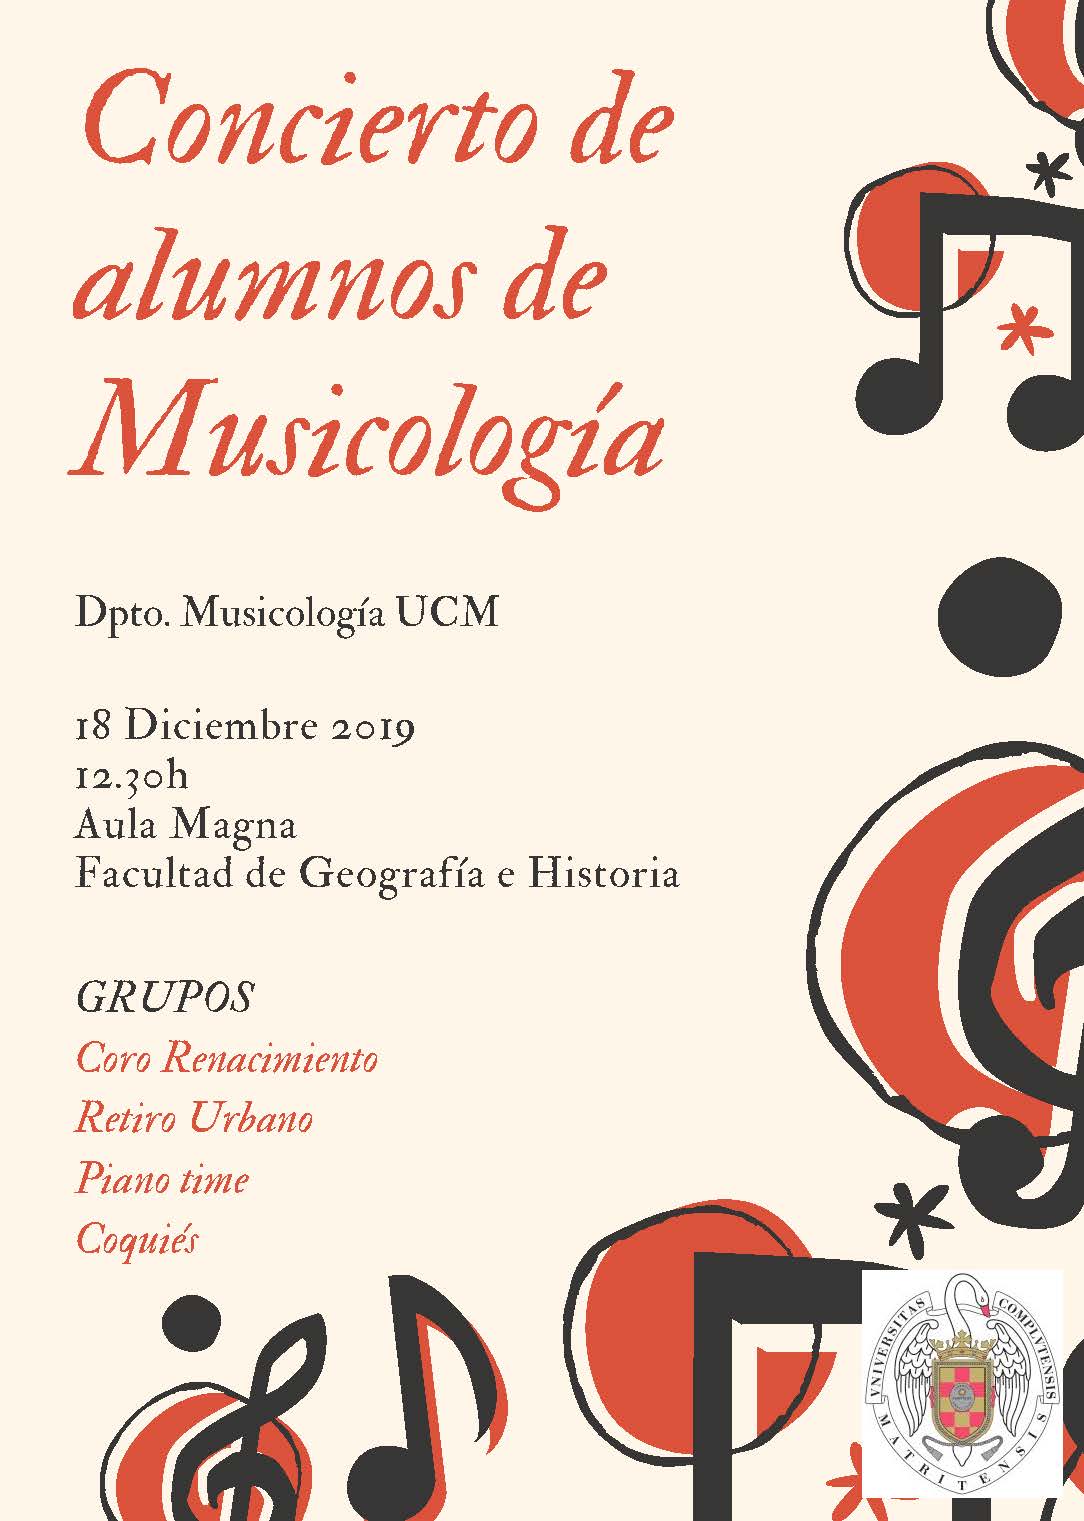 Concierto de alumnos de Musicología. 18 de diciembre 2019 a las 12:30. Aula Magna